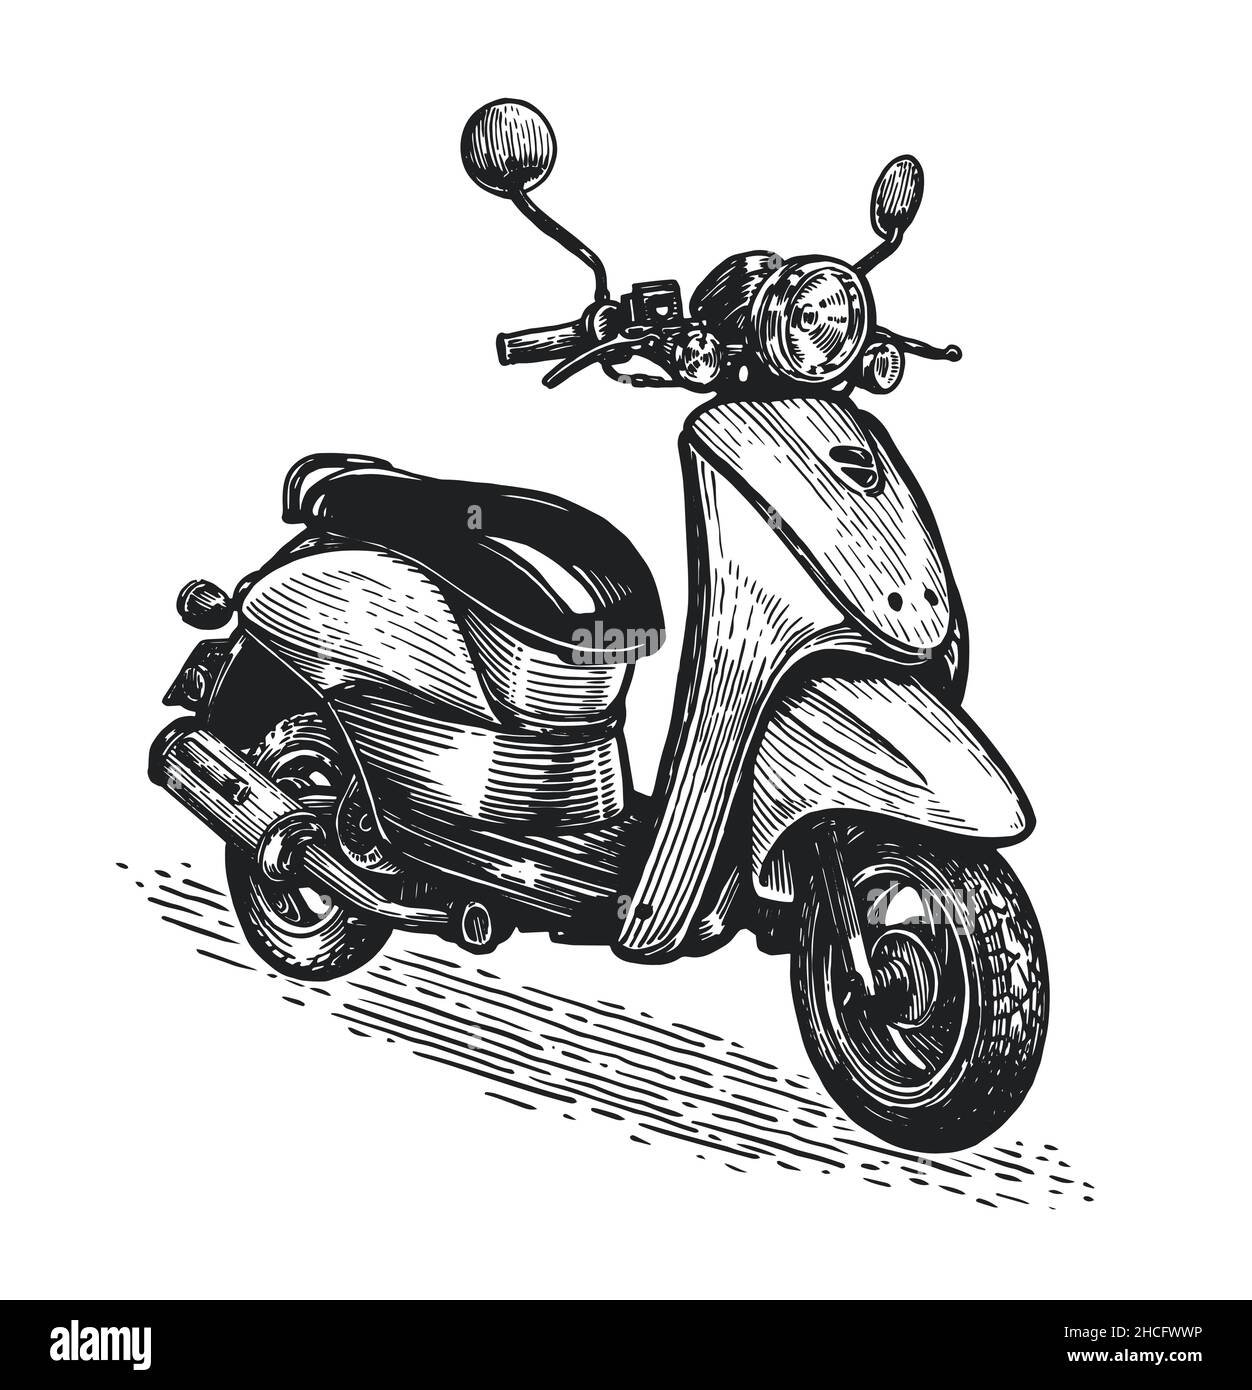 Disegno a mano dello scooter. Moto retro isolato su sfondo bianco. Disegno dettagliato stile di incisione vintage Illustrazione Vettoriale